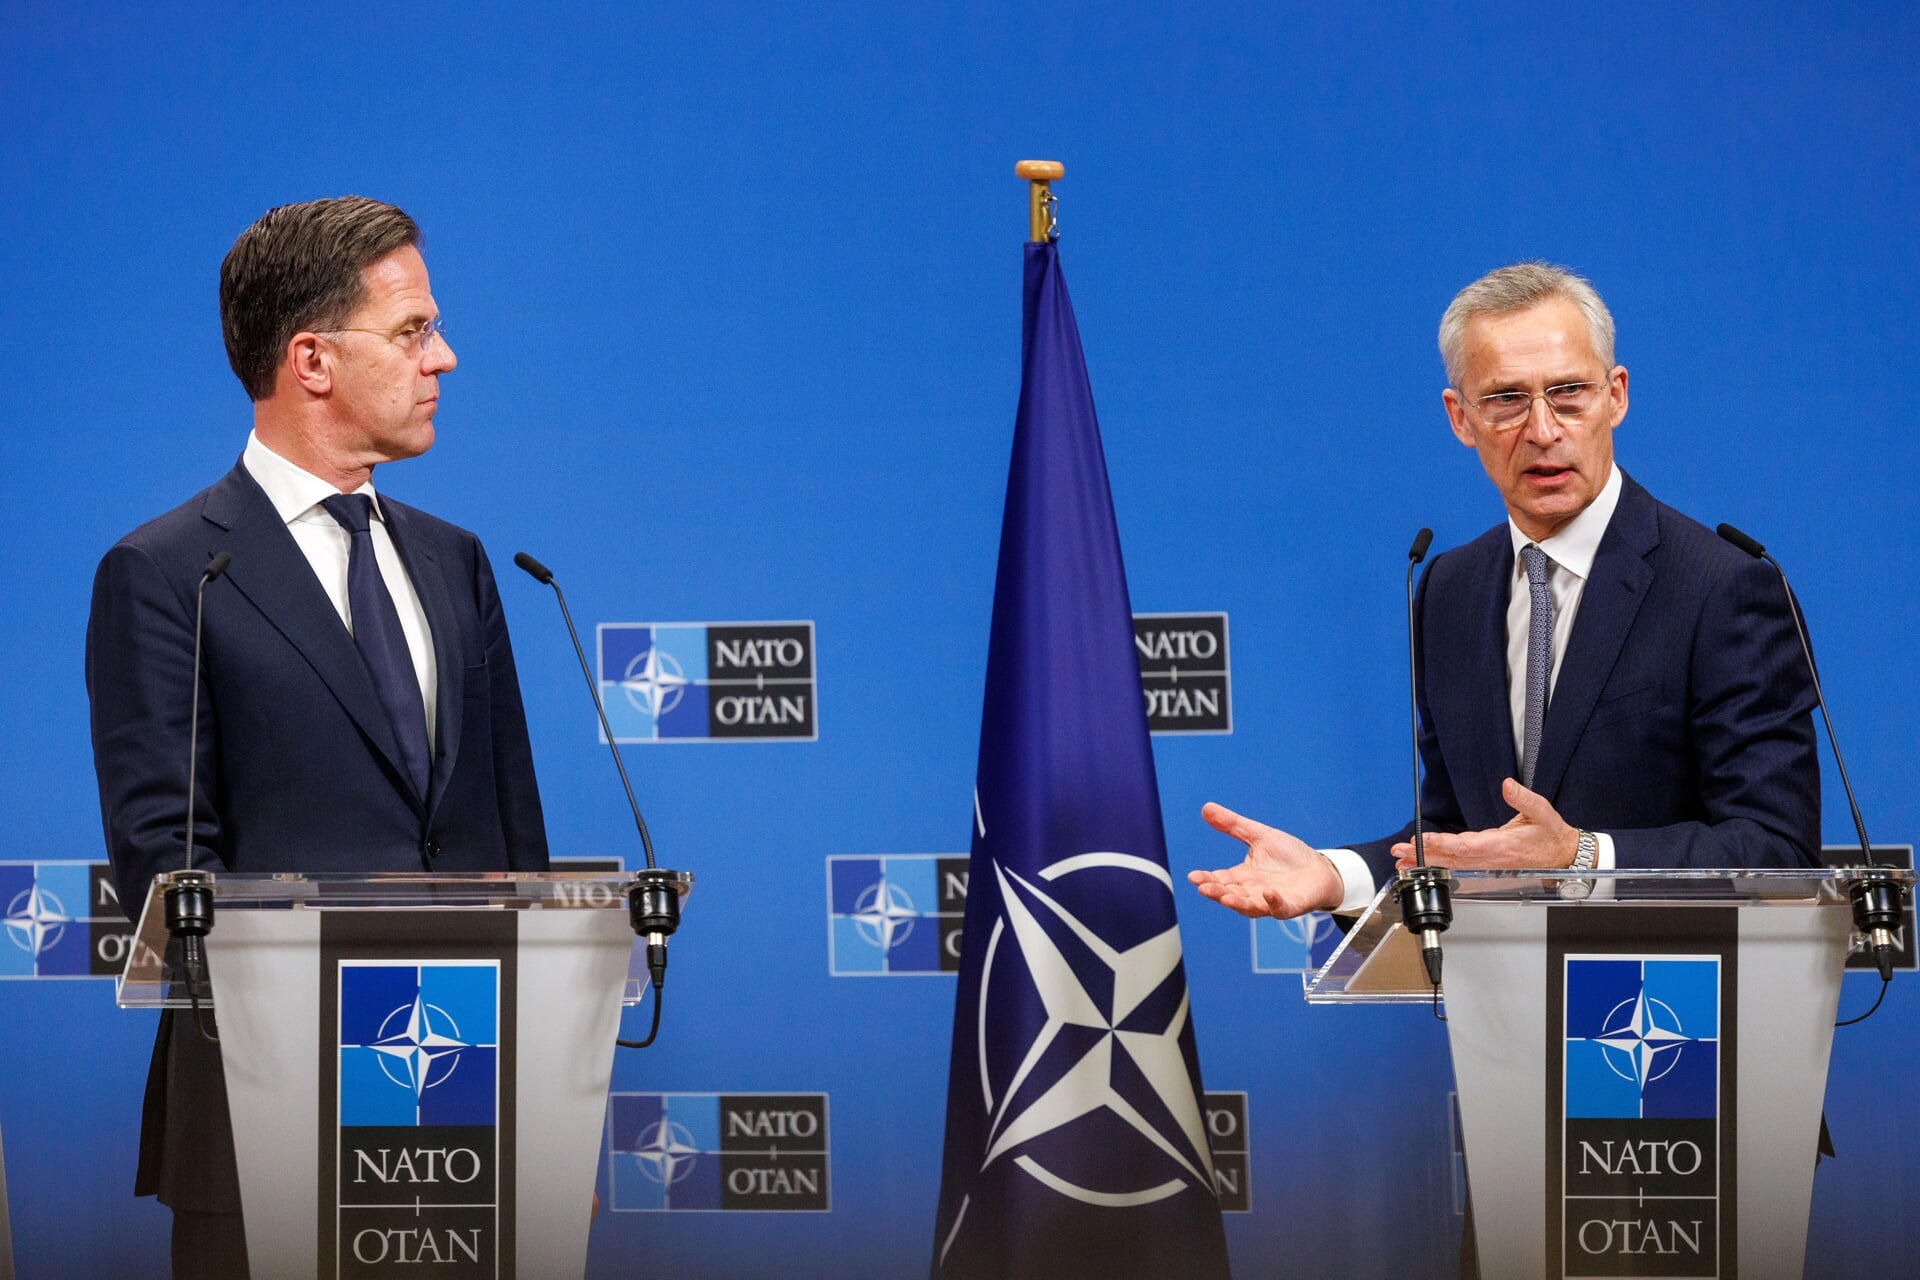 Secretaris-generaal van de NAVO Jens Stoltenberg (rechts) en premier Mark Rutte bij een persconferentie in Brussel, op woensdag. 